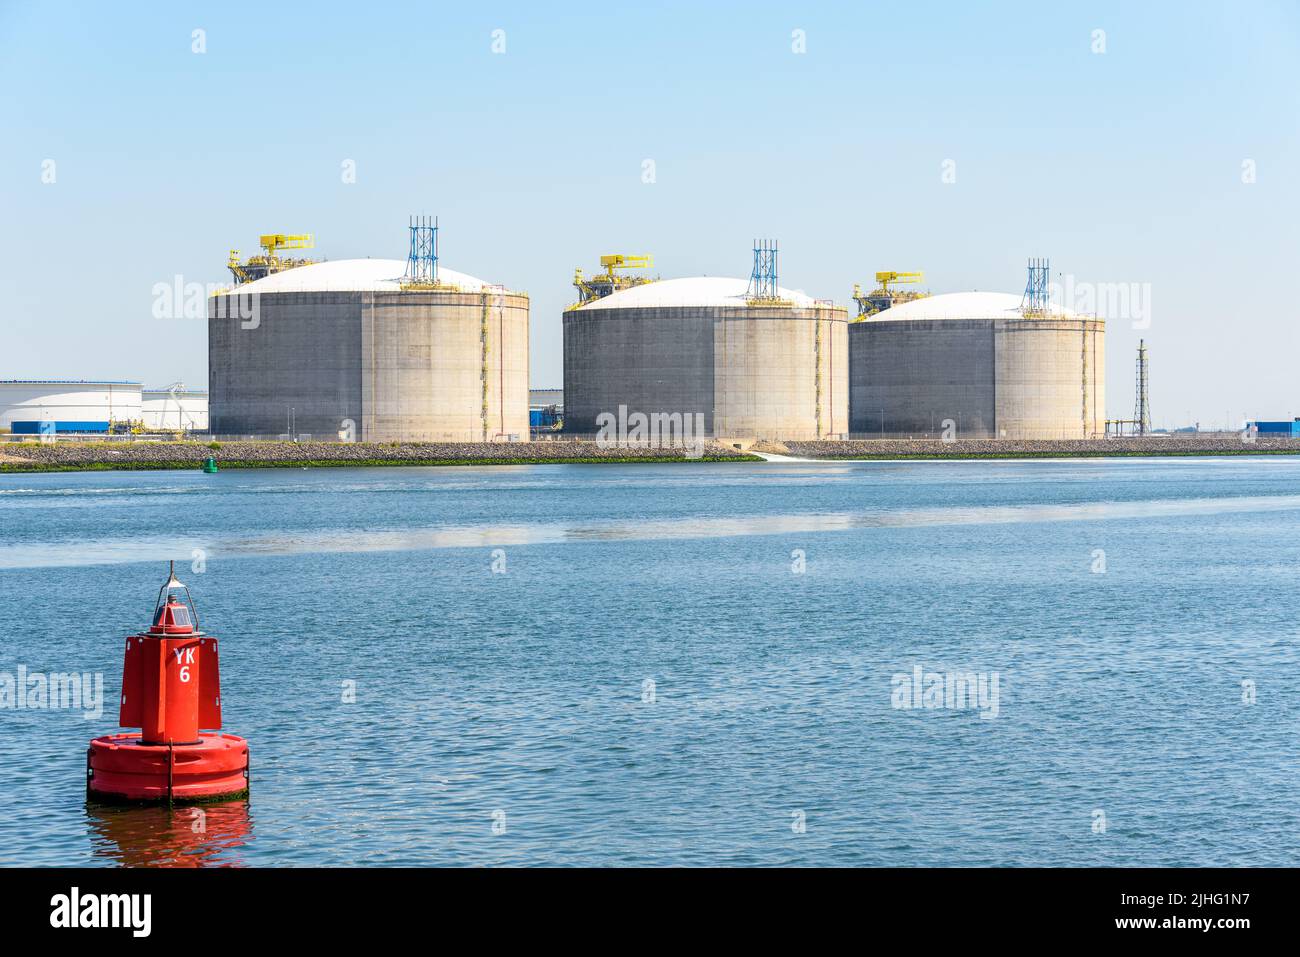 Terminal de gas natural licuado con grandes tanques de hormigón a lo largo de un puerto en un día soleado Foto de stock